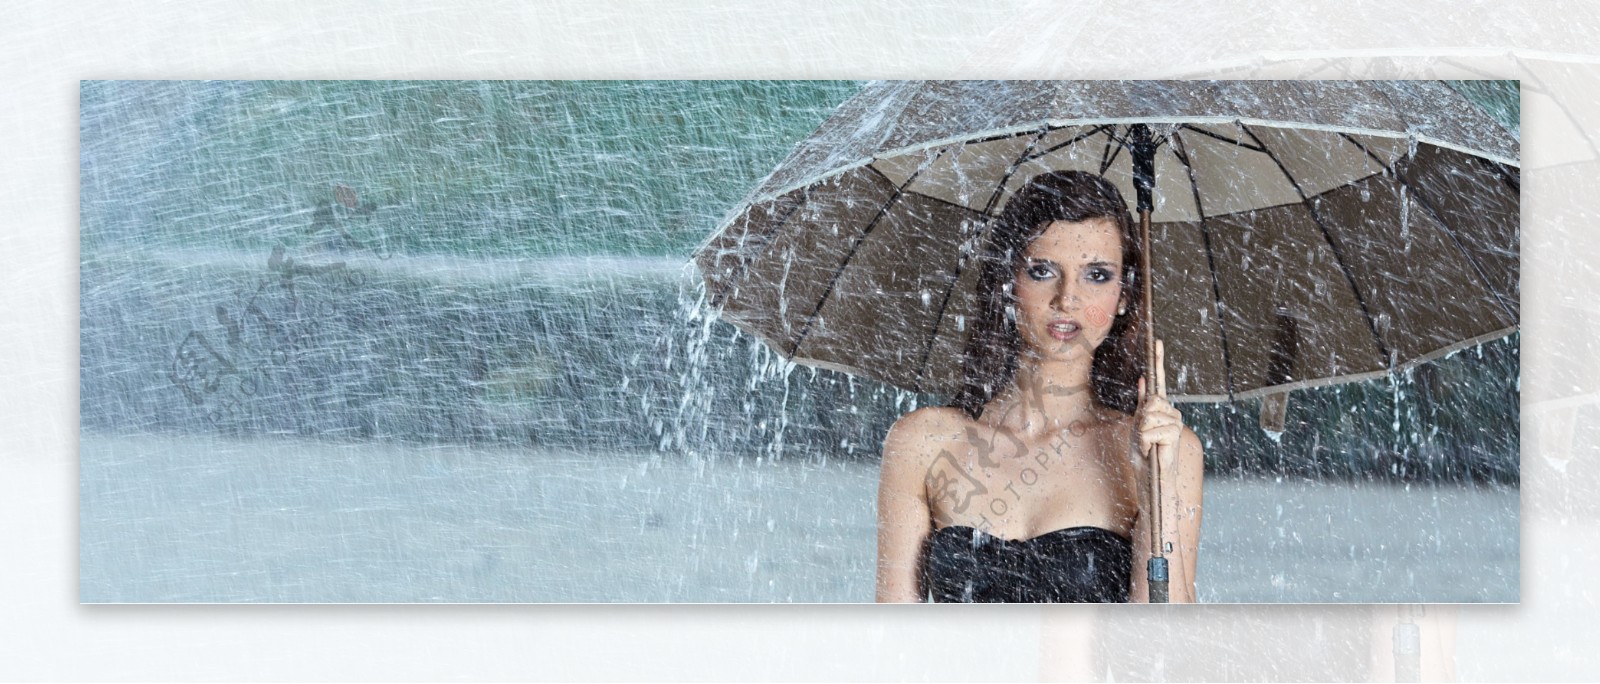 雨中撑伞的美女图片